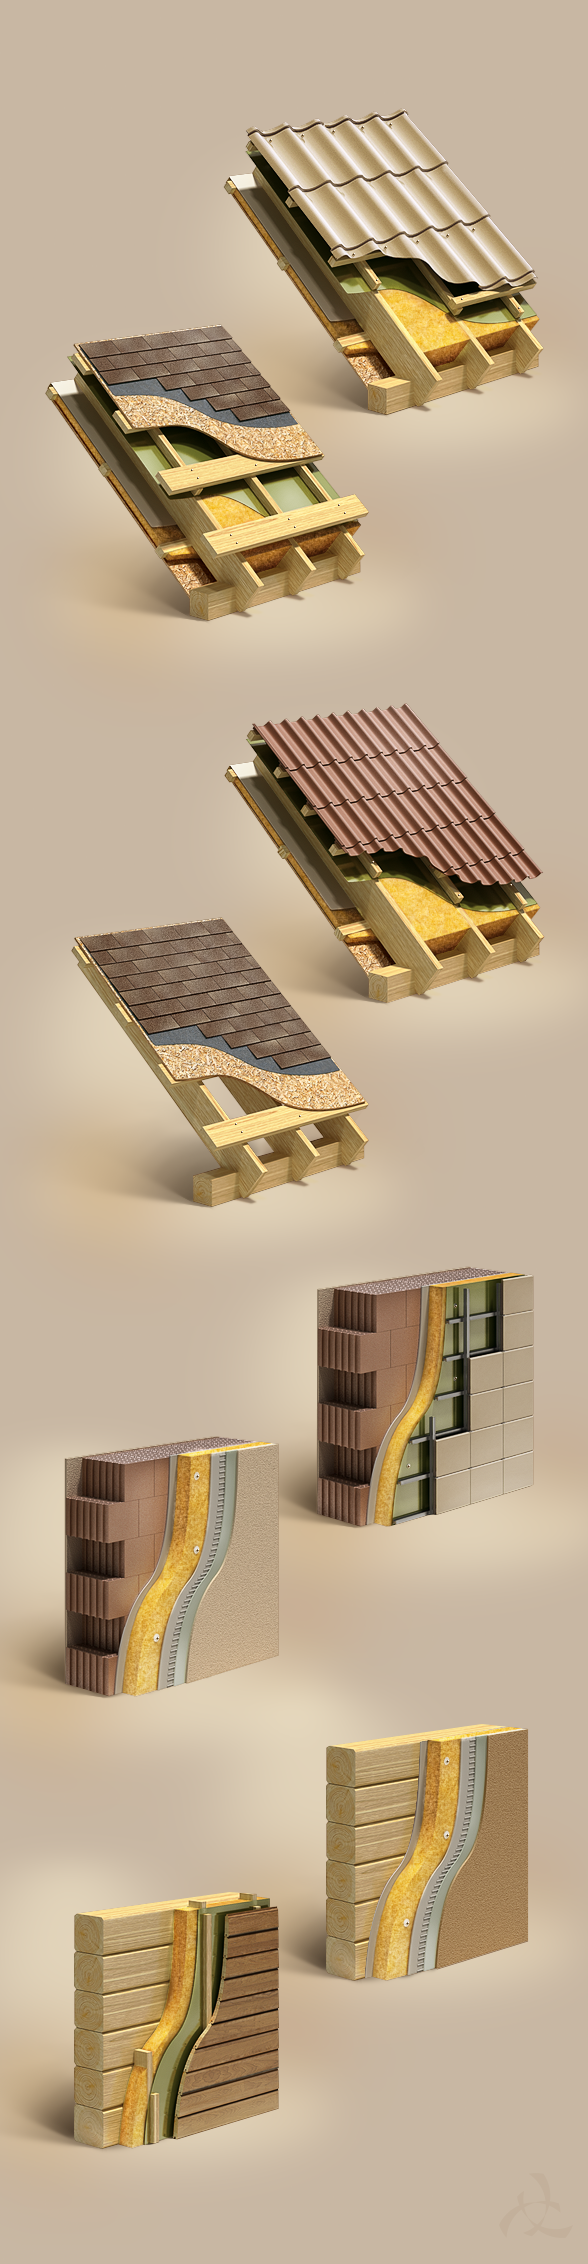 construction wall roof cut-away cutaway arhelix